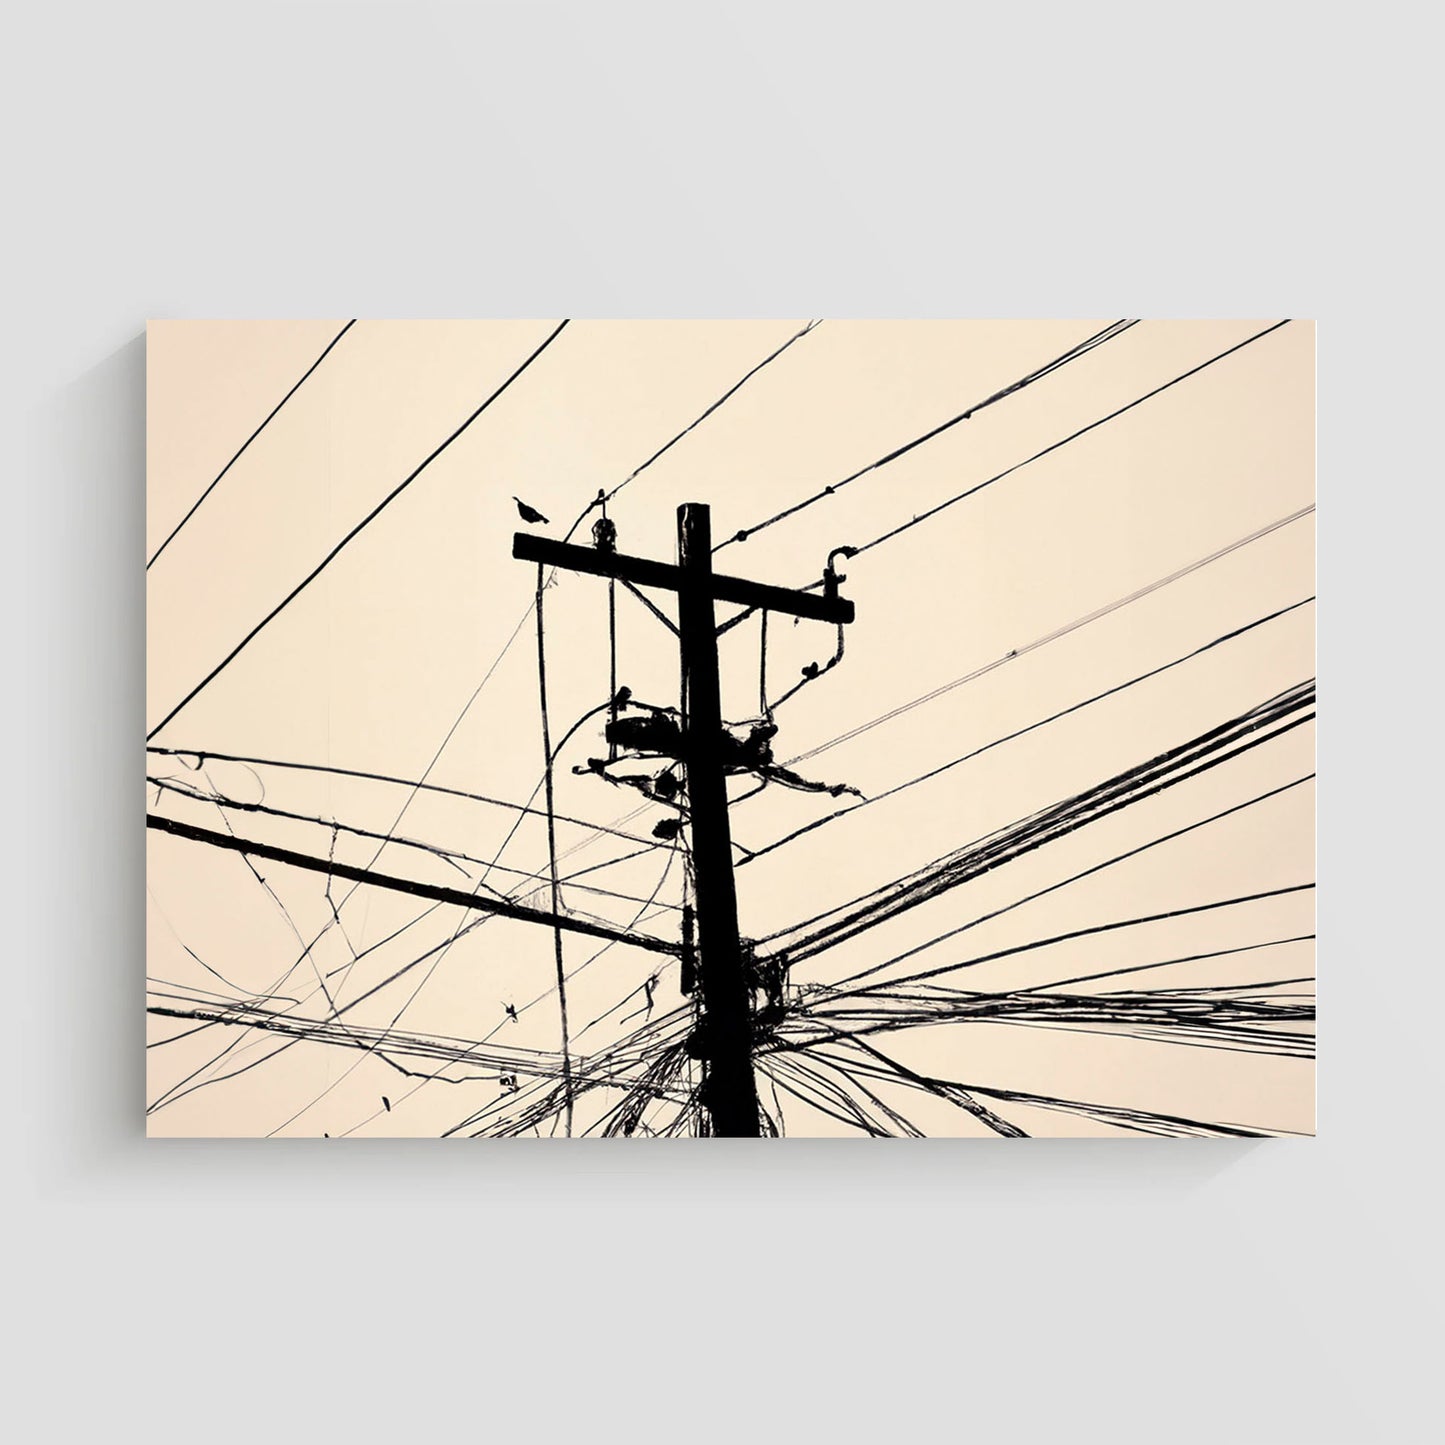 Imagen artística de un poste de electricidad con cables en silueta negra sobre un fondo beige